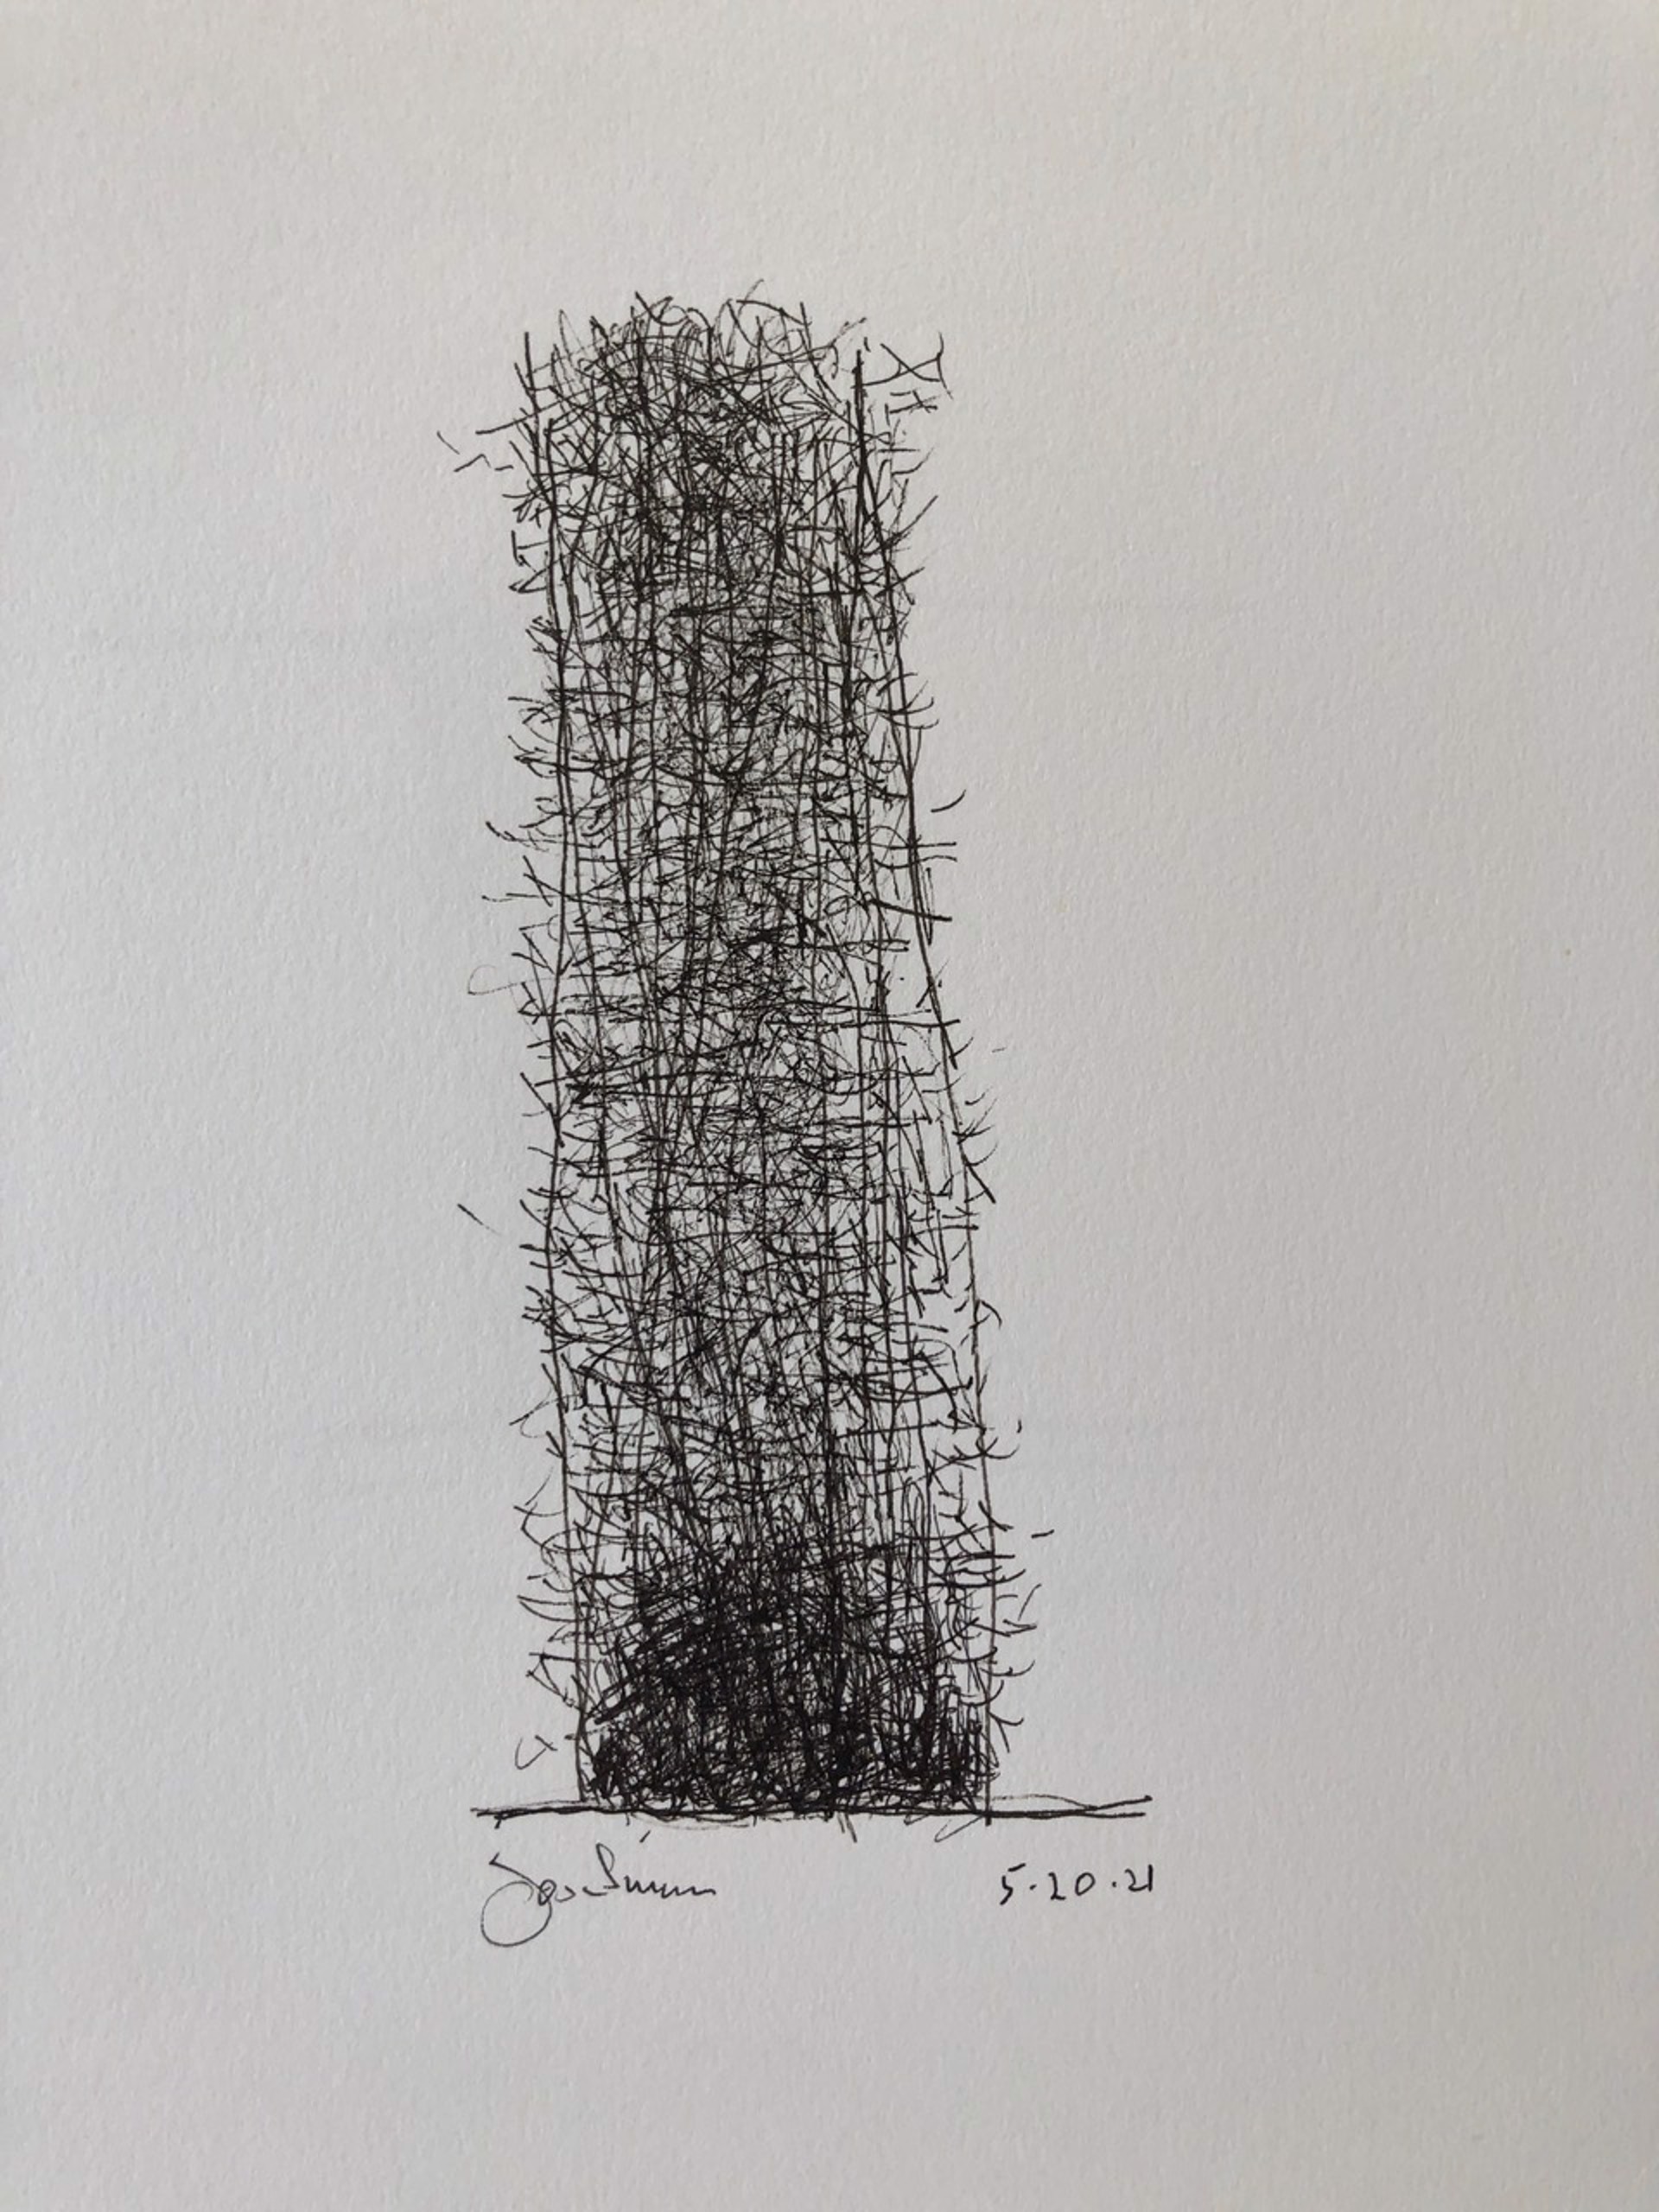 Abstract no.6, 2021 by John Goodman